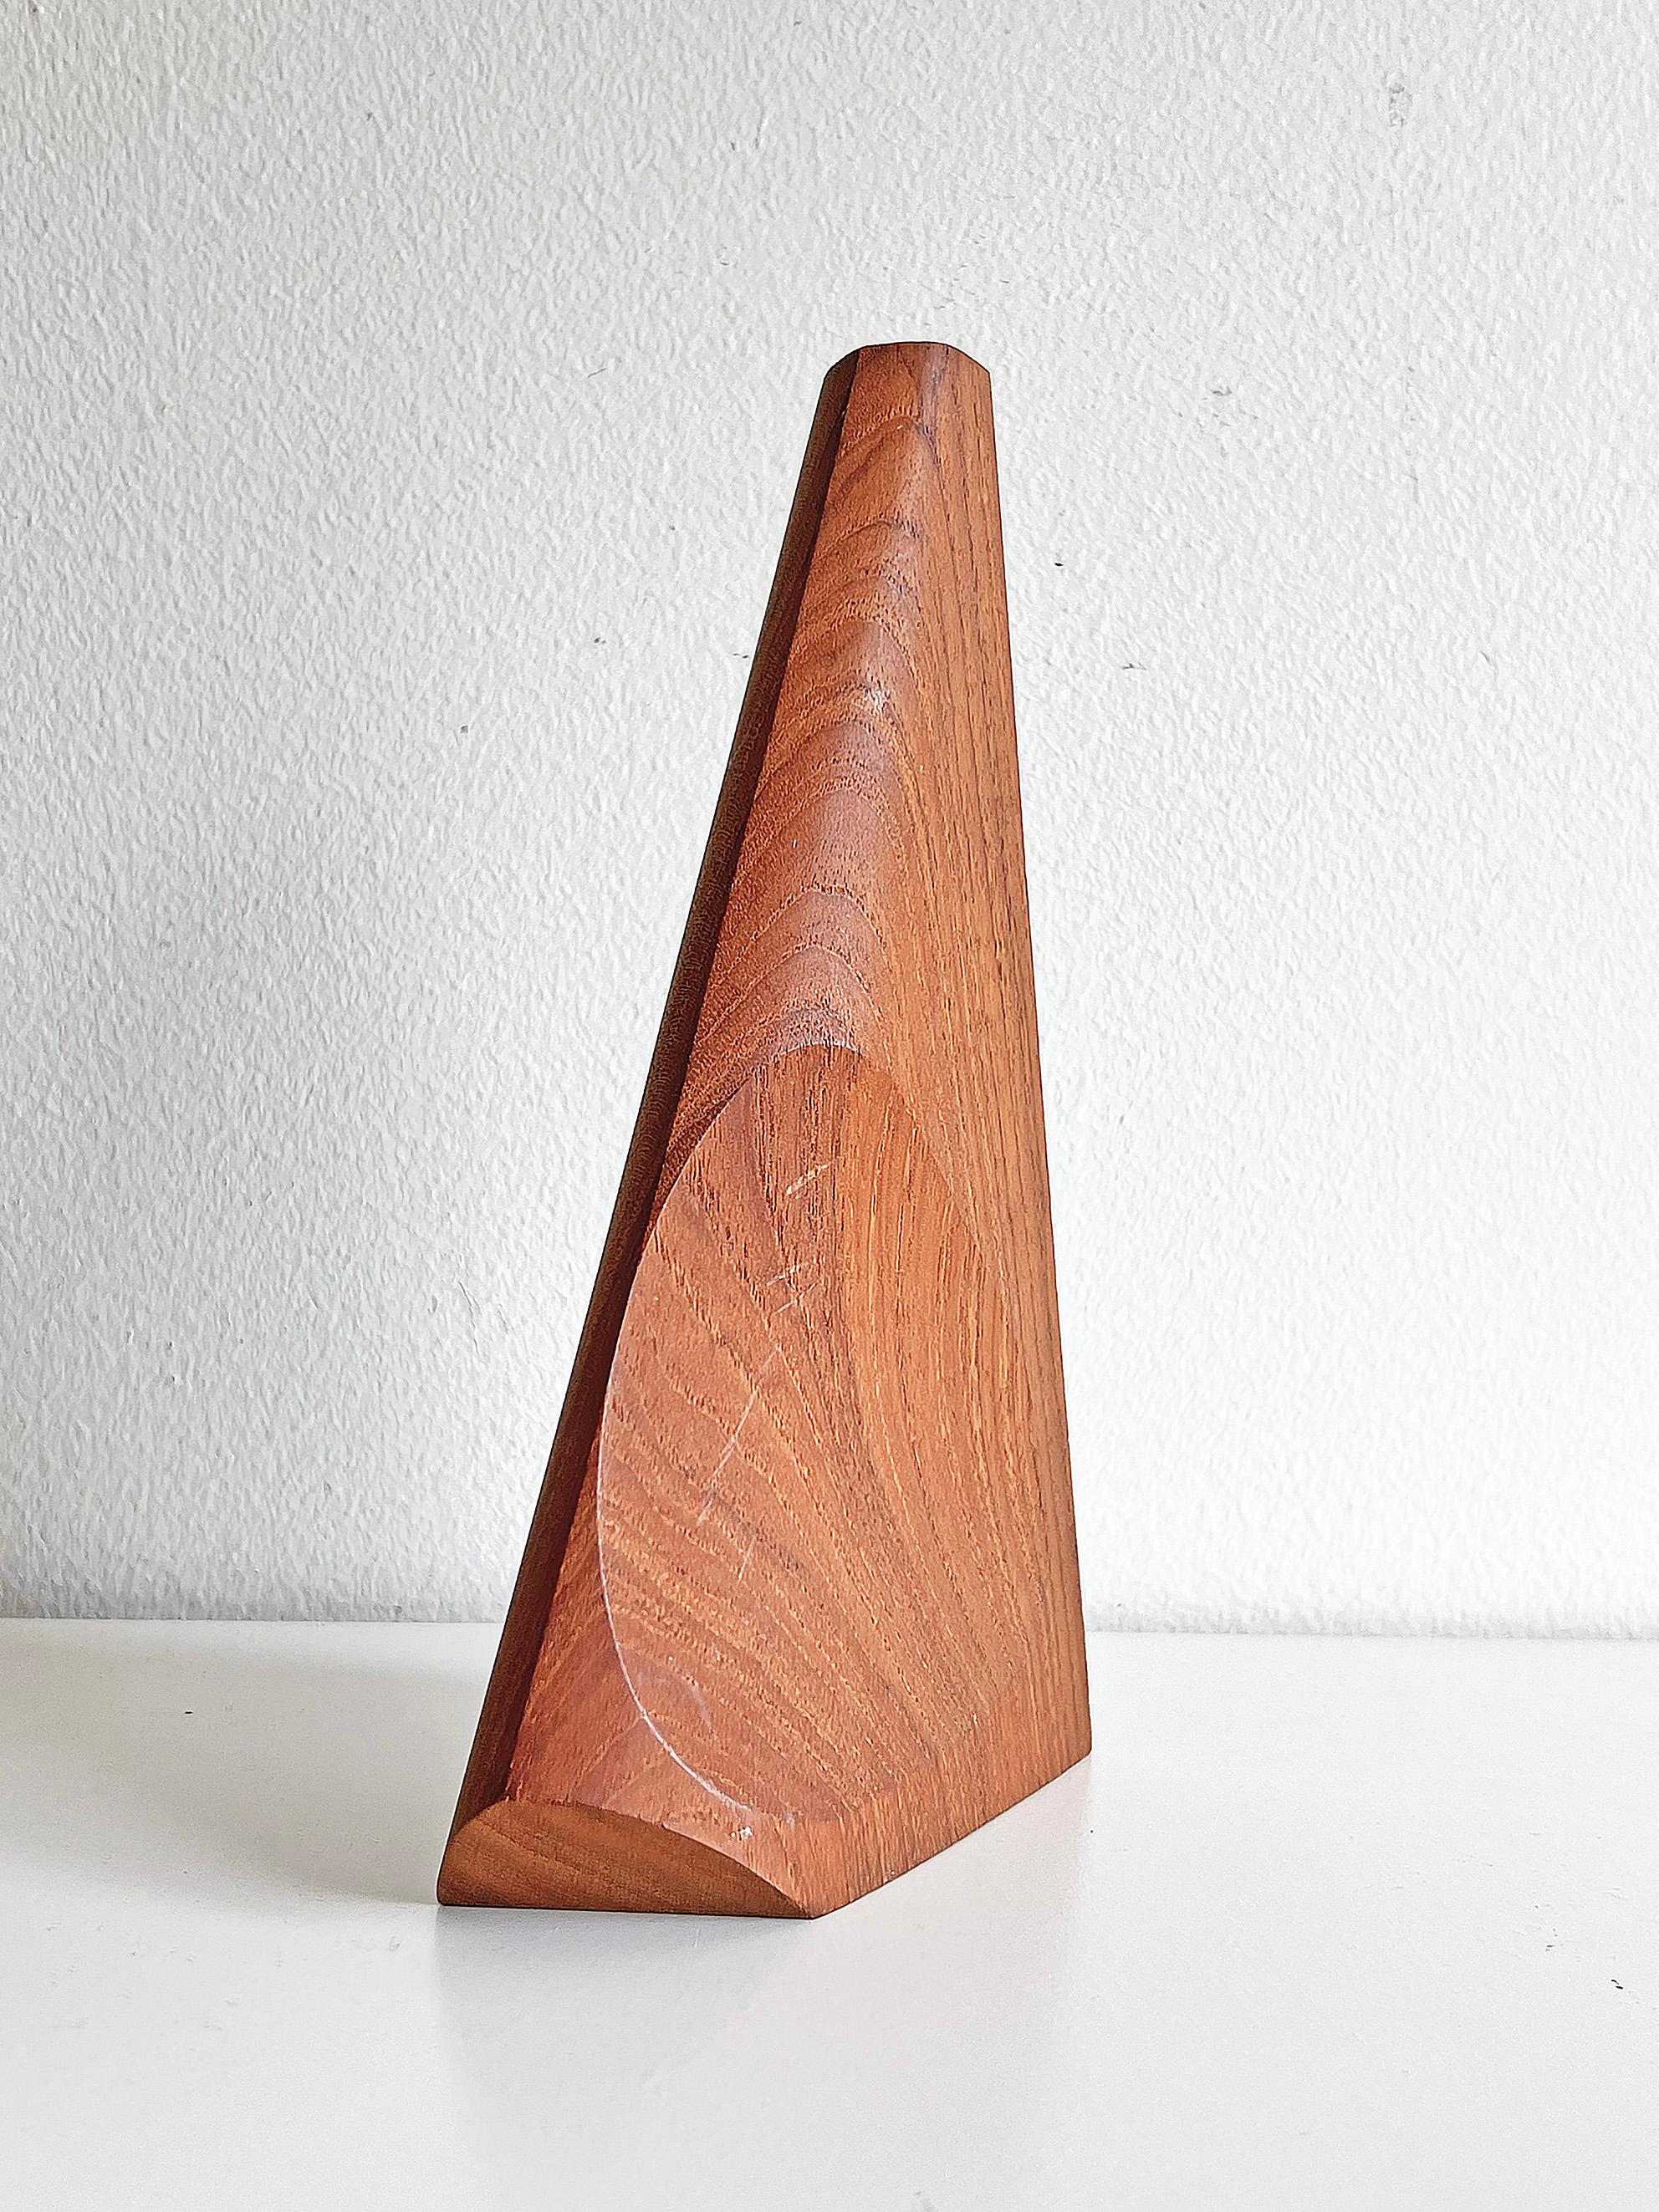 Swedish Modern Sculptural Vase in Teak For Sale 2